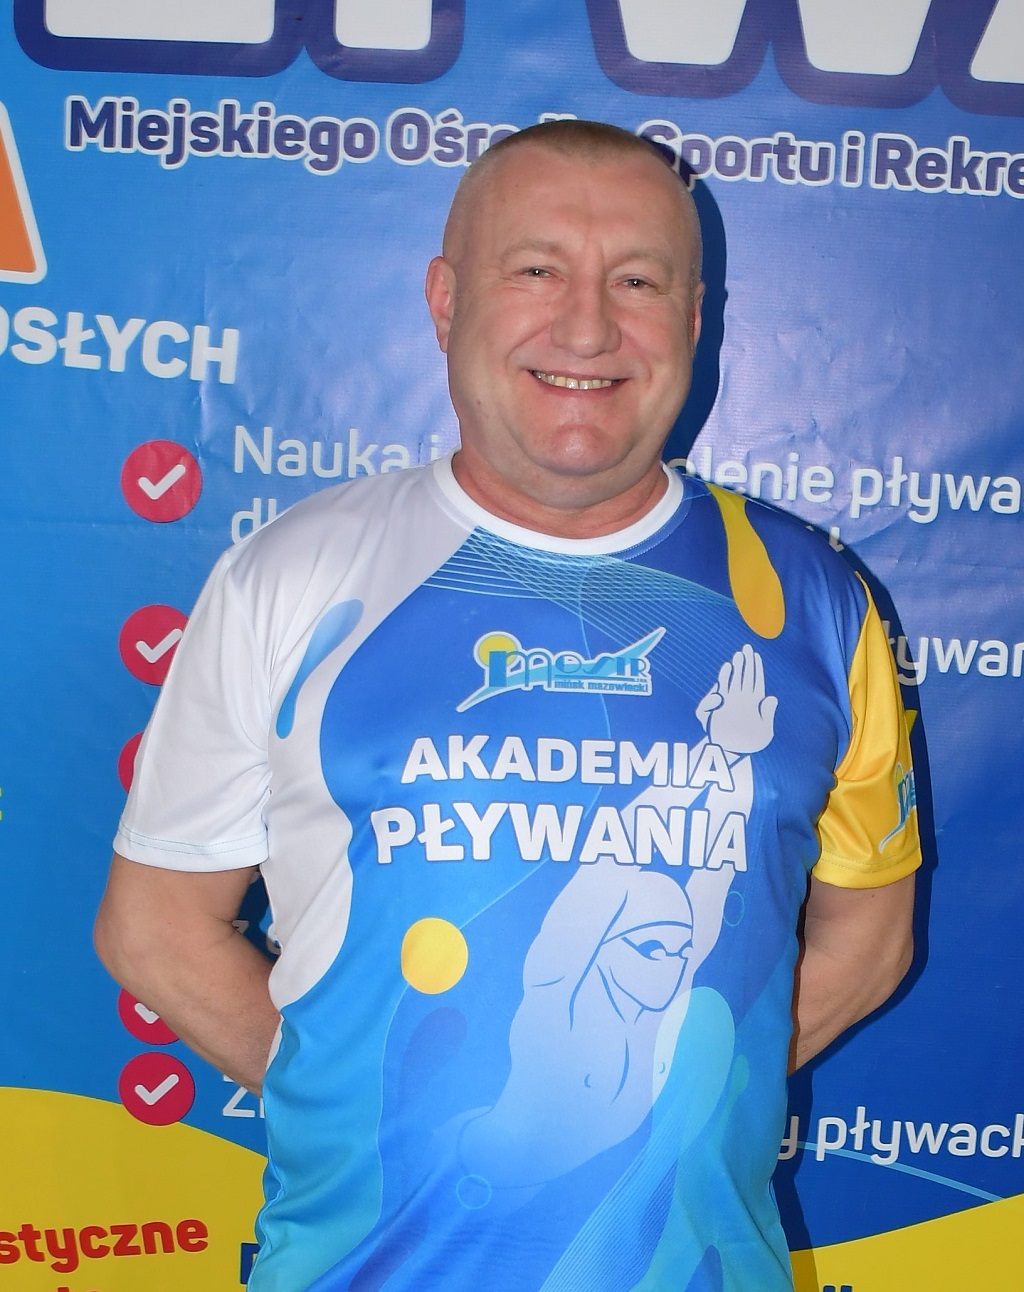 Piotr Wirowski